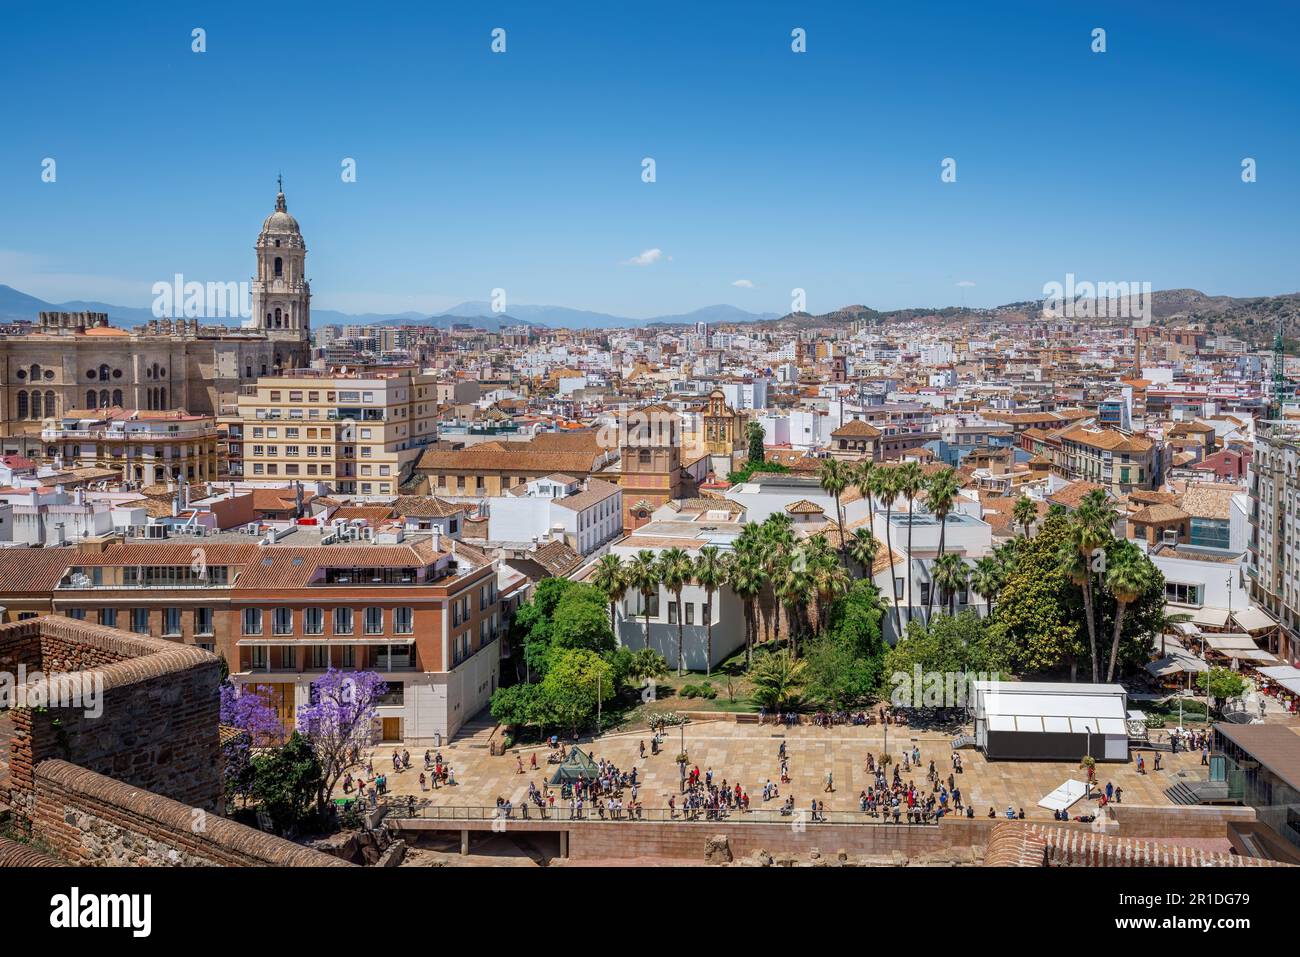 Luftaufnahme der Skyline von Malaga mit der Kathedrale von Malaga - Malaga, Andalusien, Spanien Stockfoto